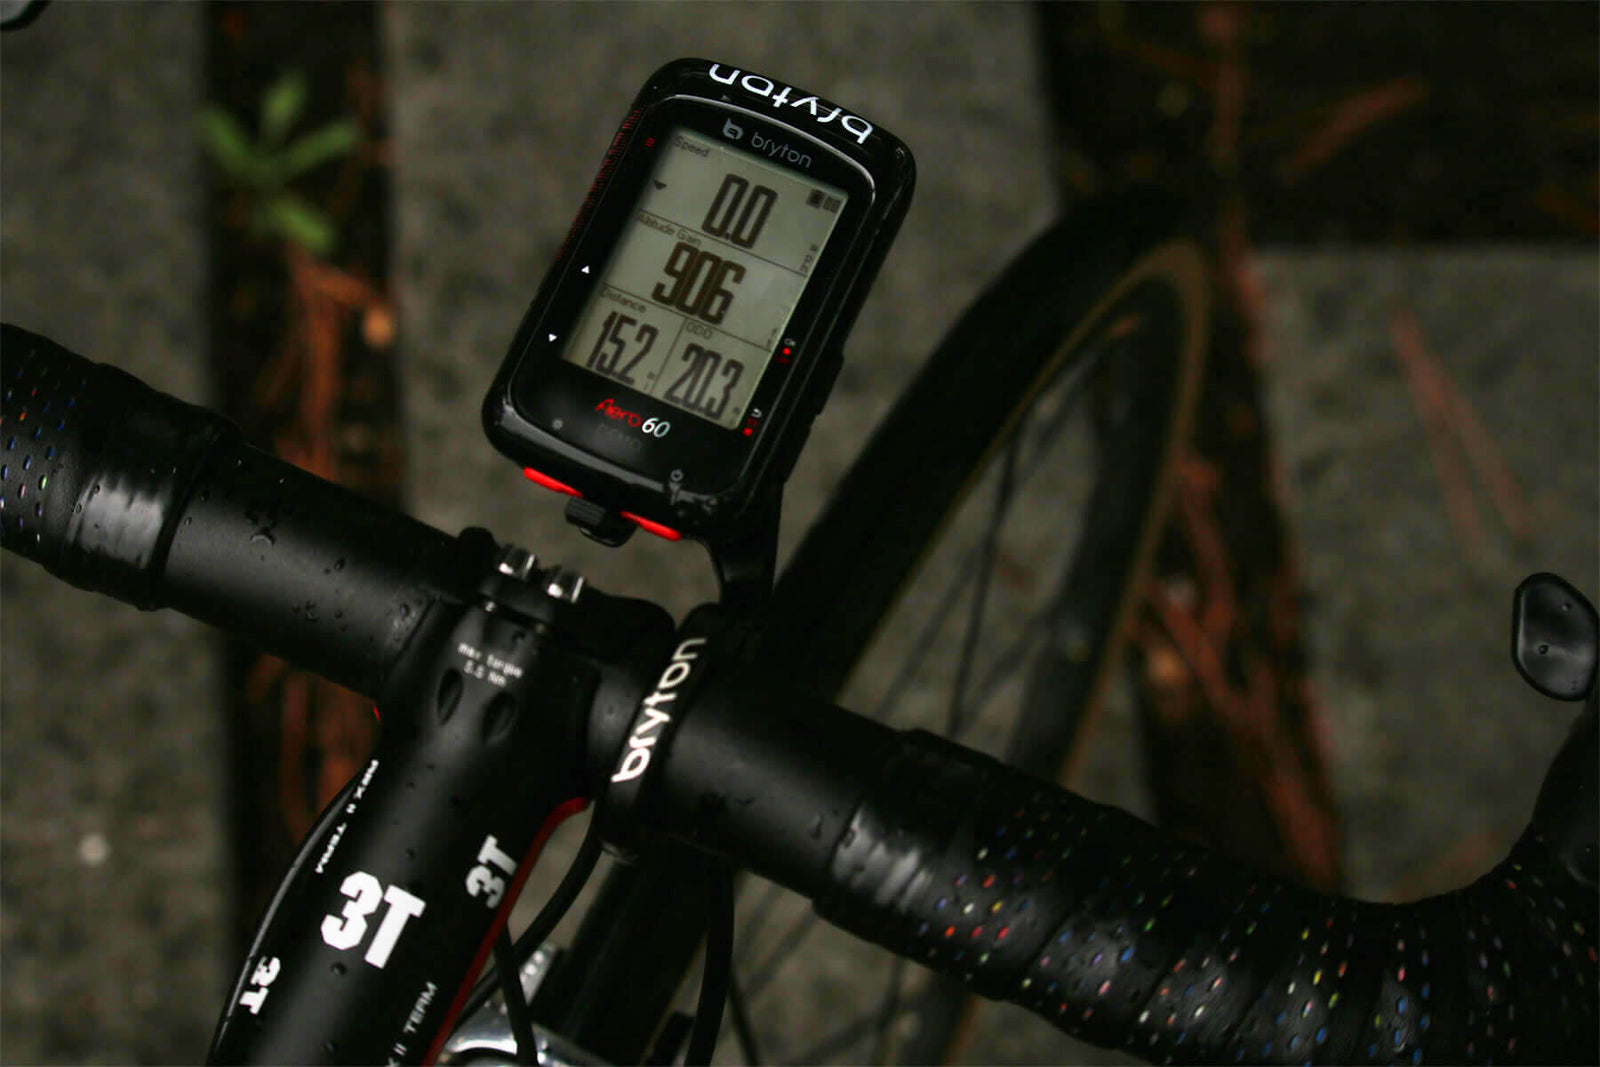 Ridden and Reviewed: Bryton Aero 60 and Rider 15 GPS Cycling Computers